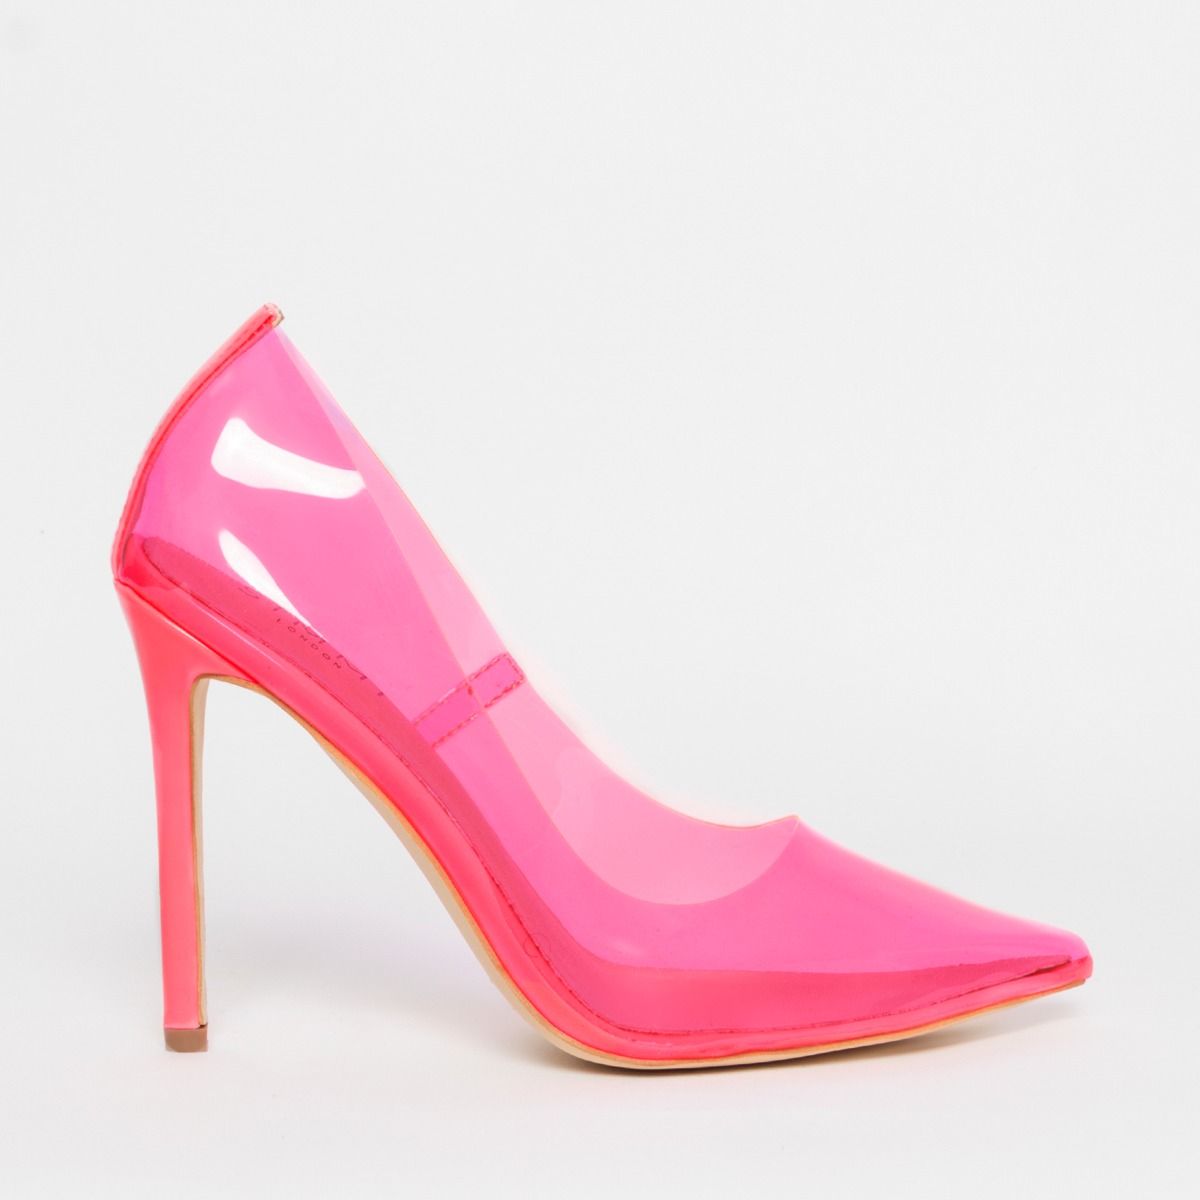 neon pink shoes heels